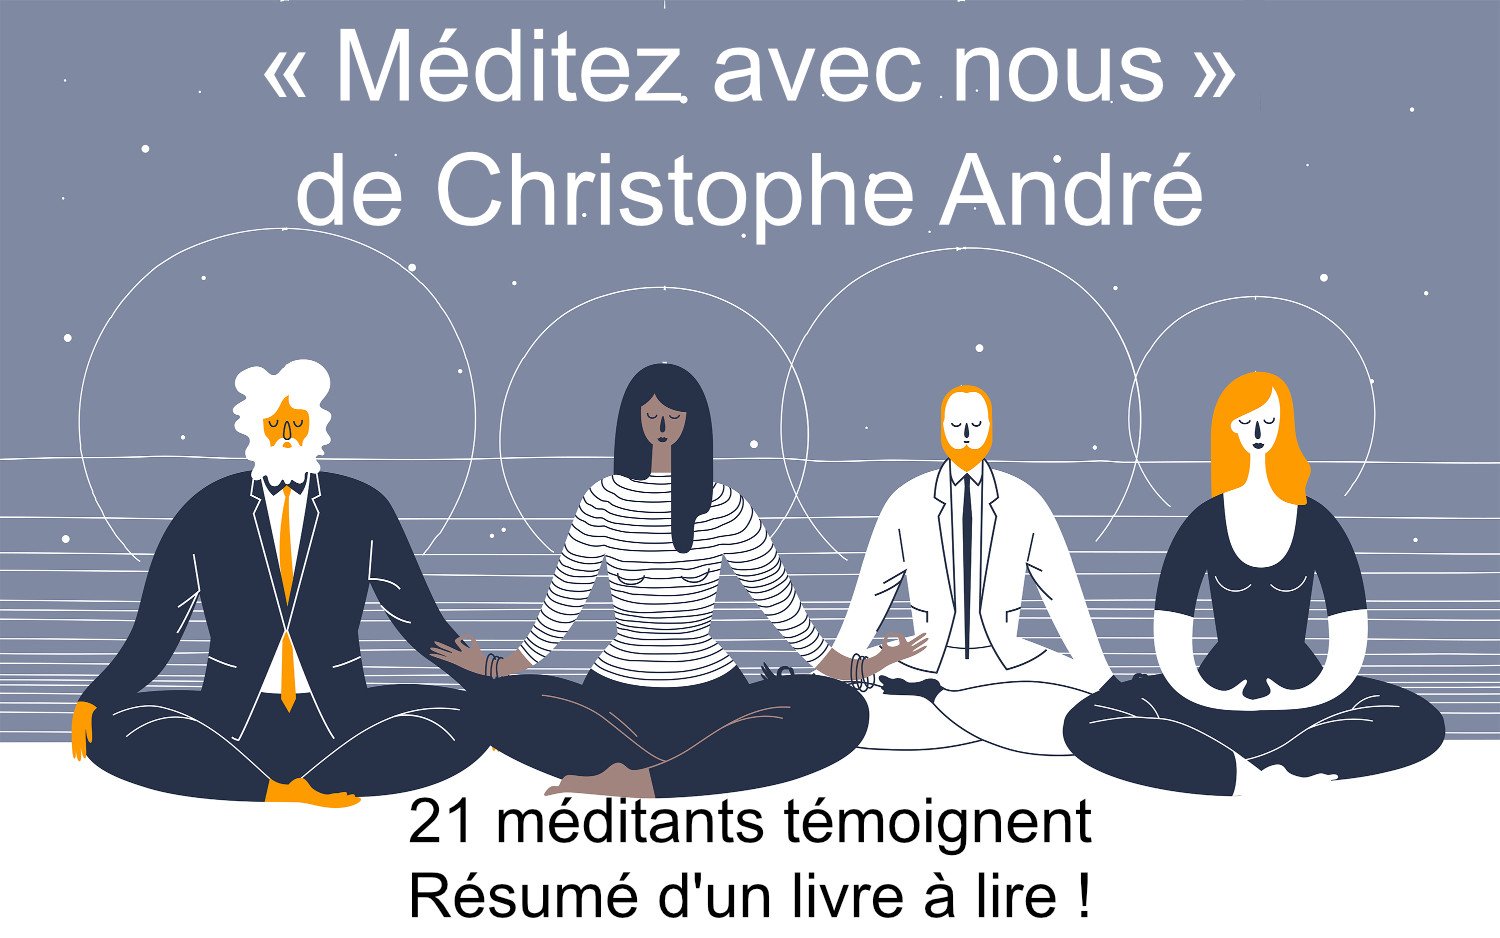 "Méditez avec nous" de Christophe André